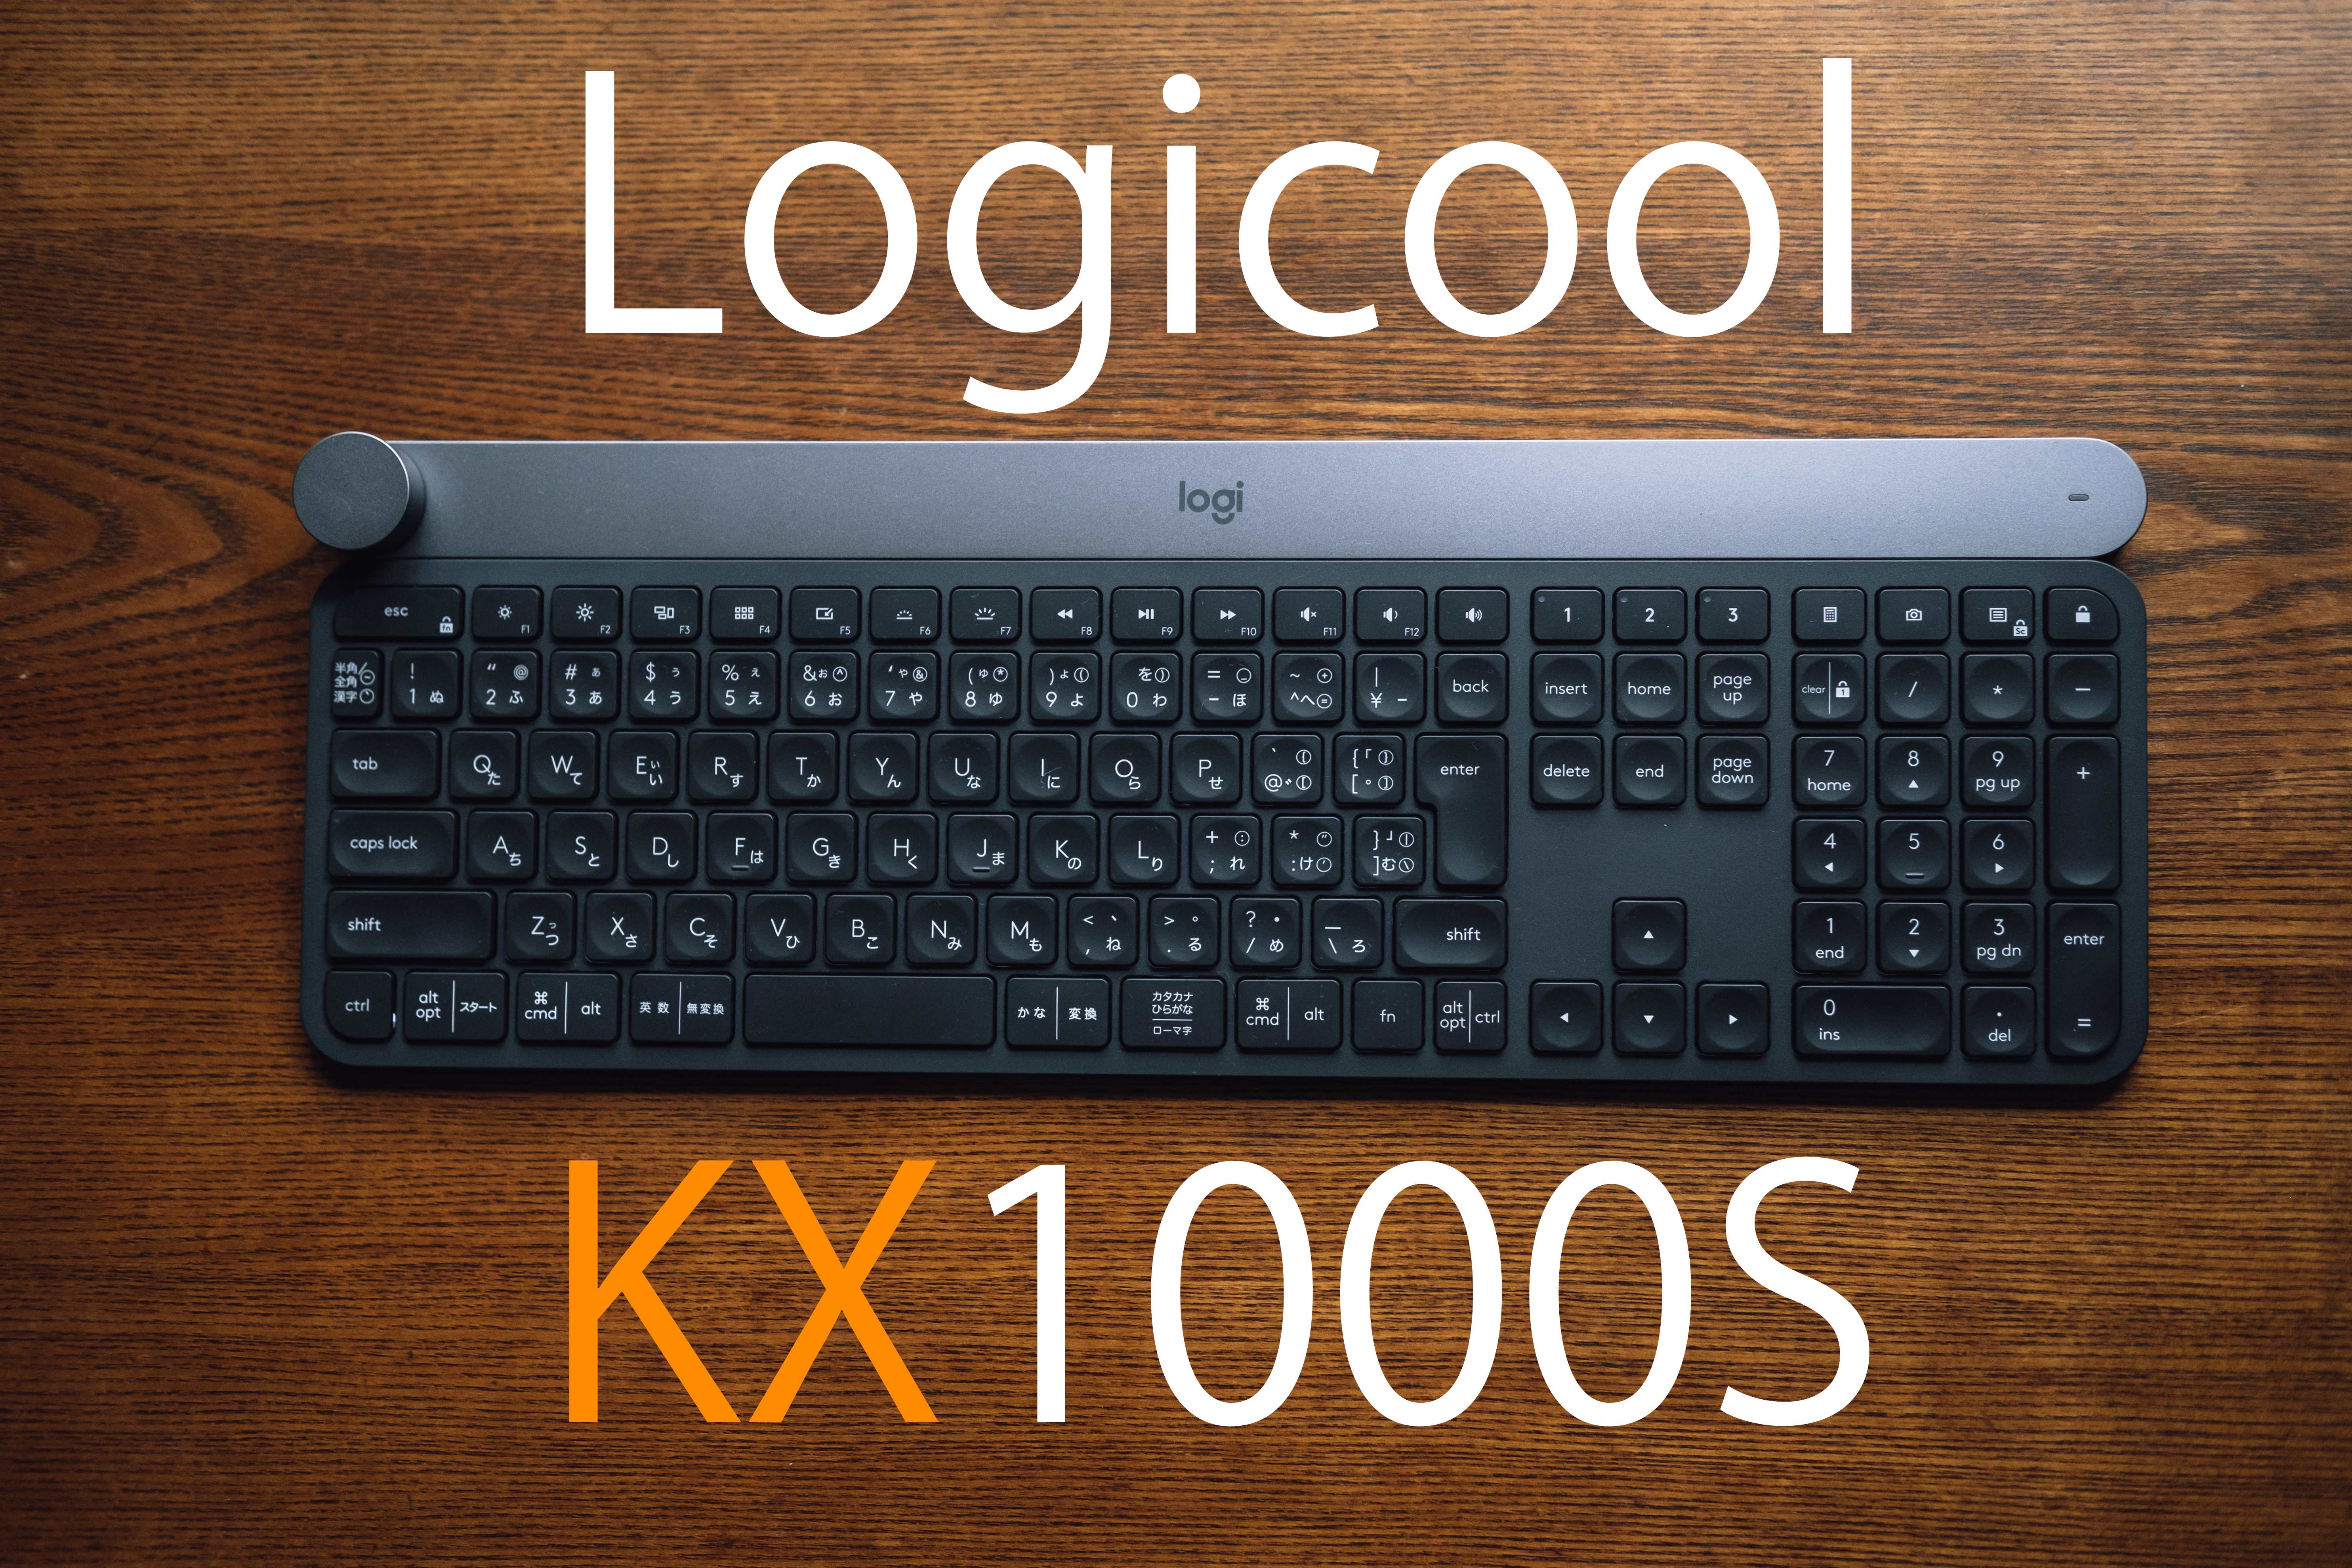 クリエイティブなあなたに。Logicoolの高級キーボード”KX1000S”レビュー | Photograpark